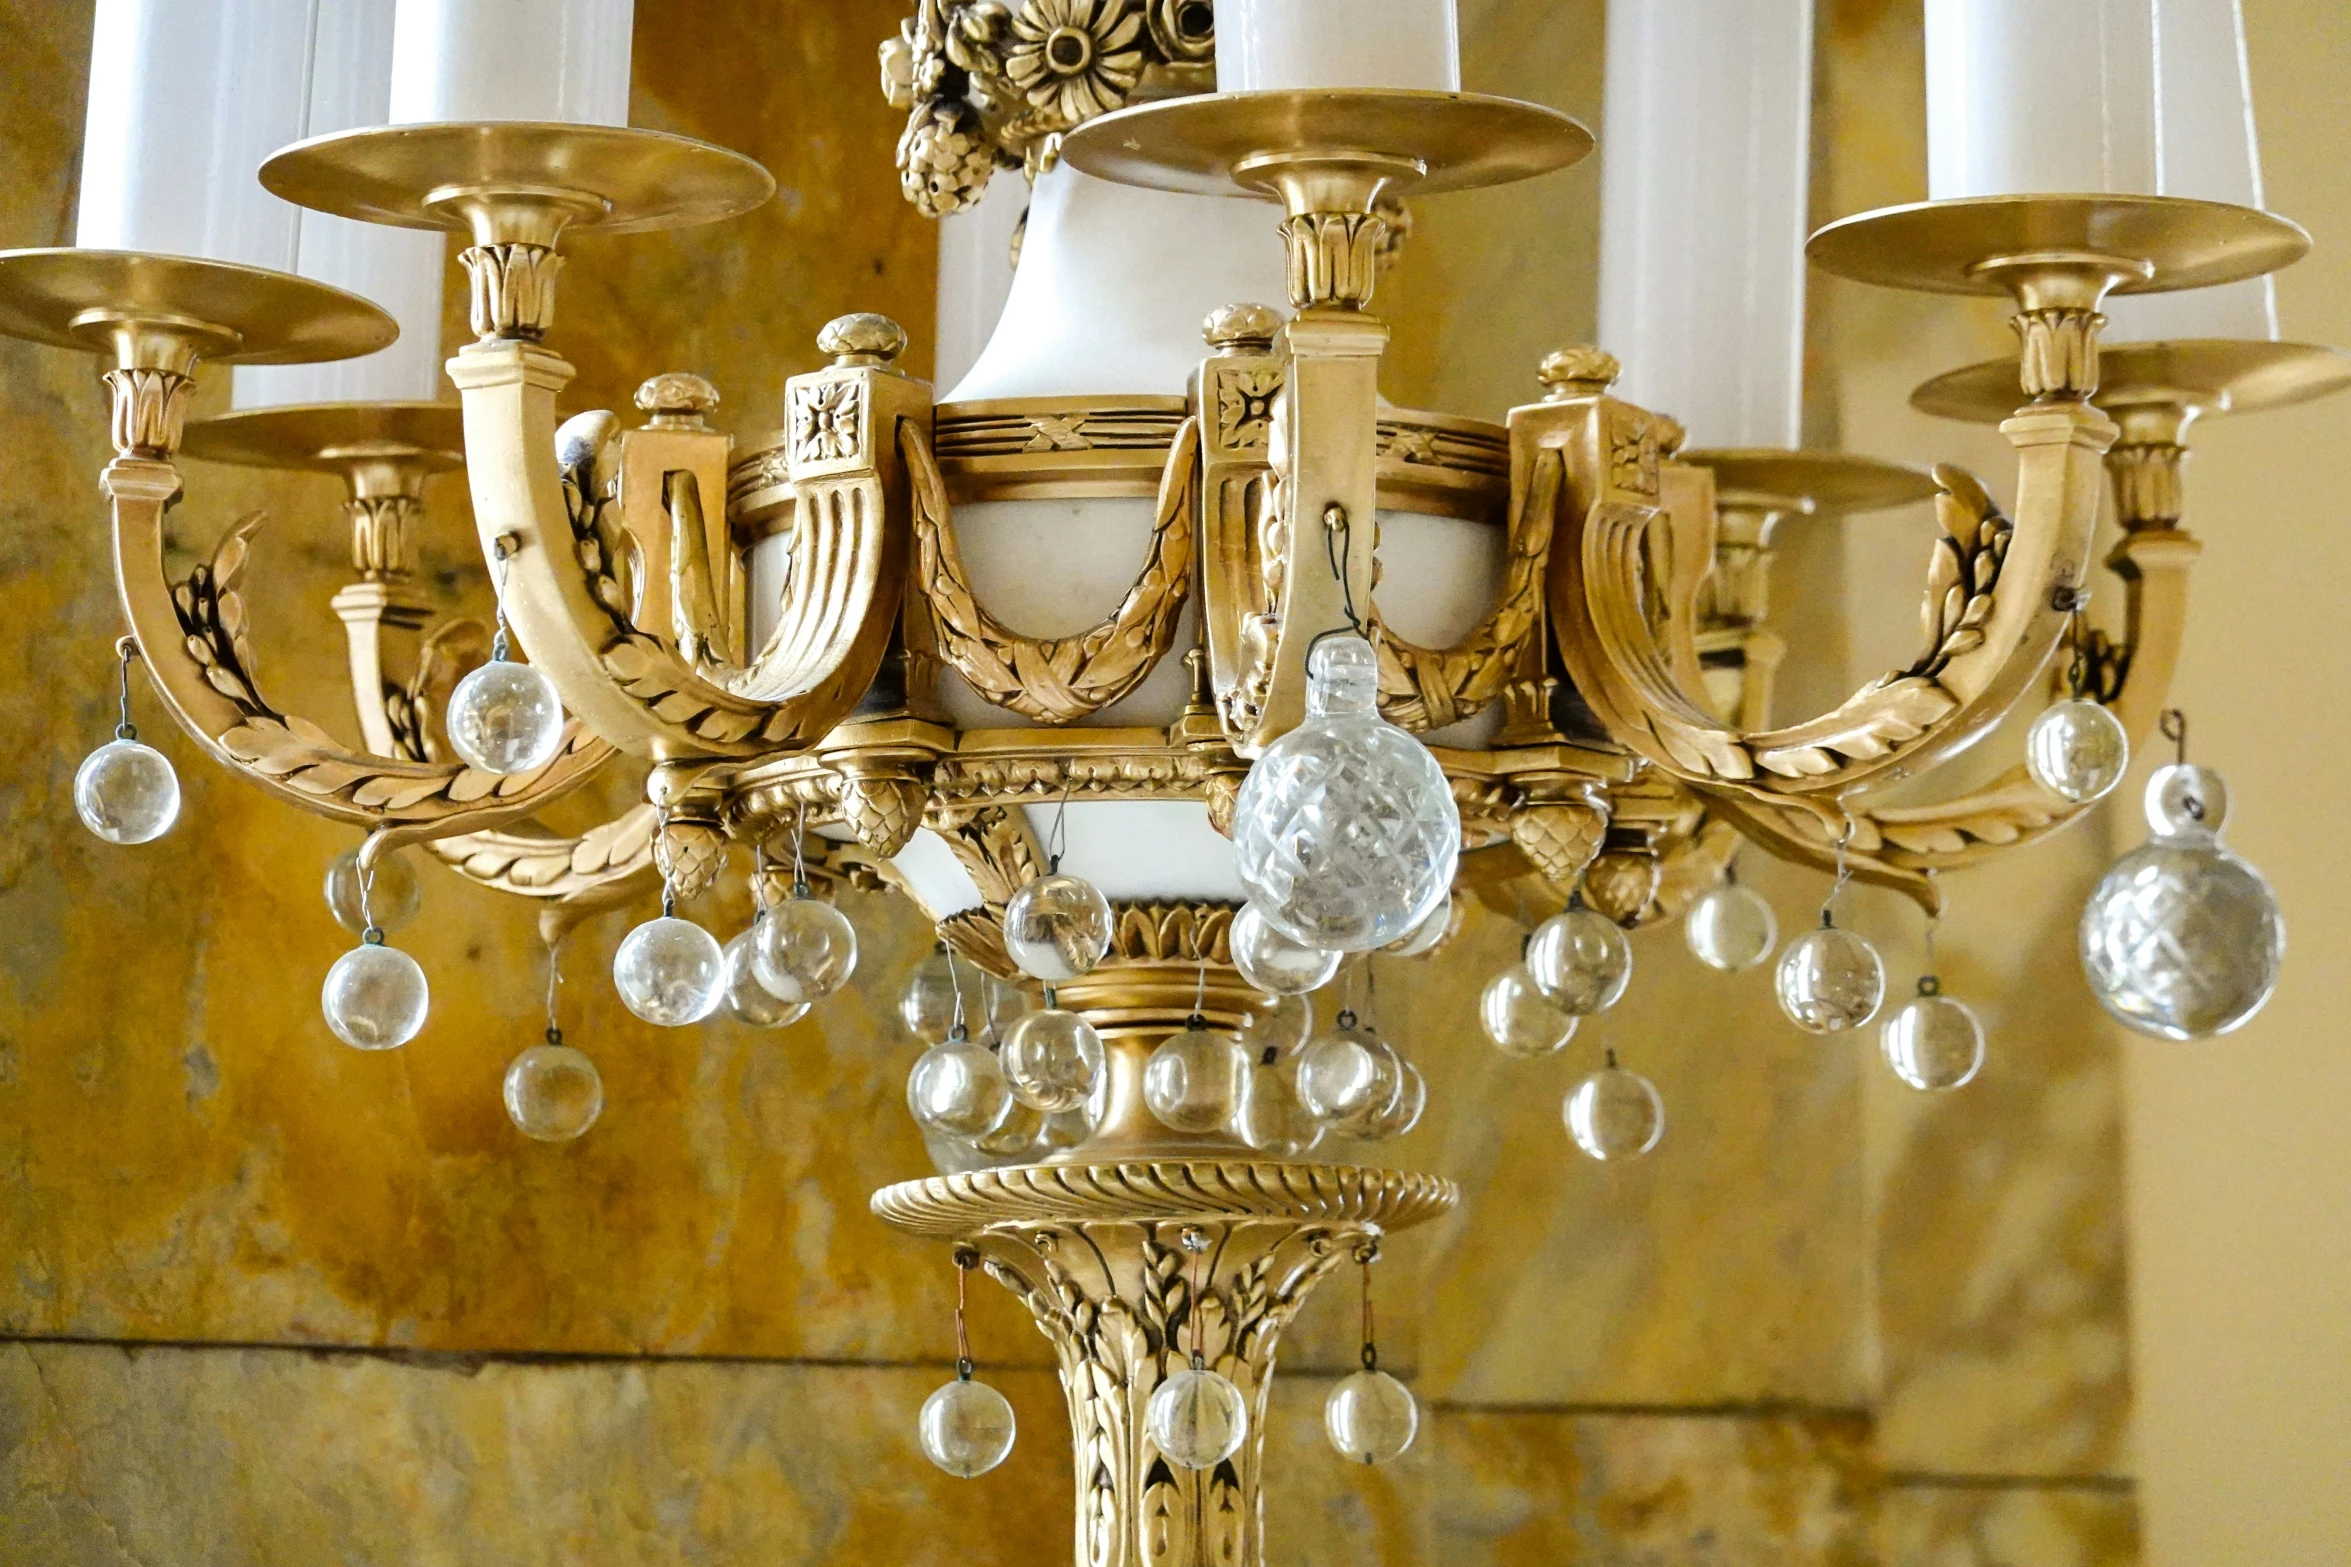 a fancy gold chandelier hangs in the corner